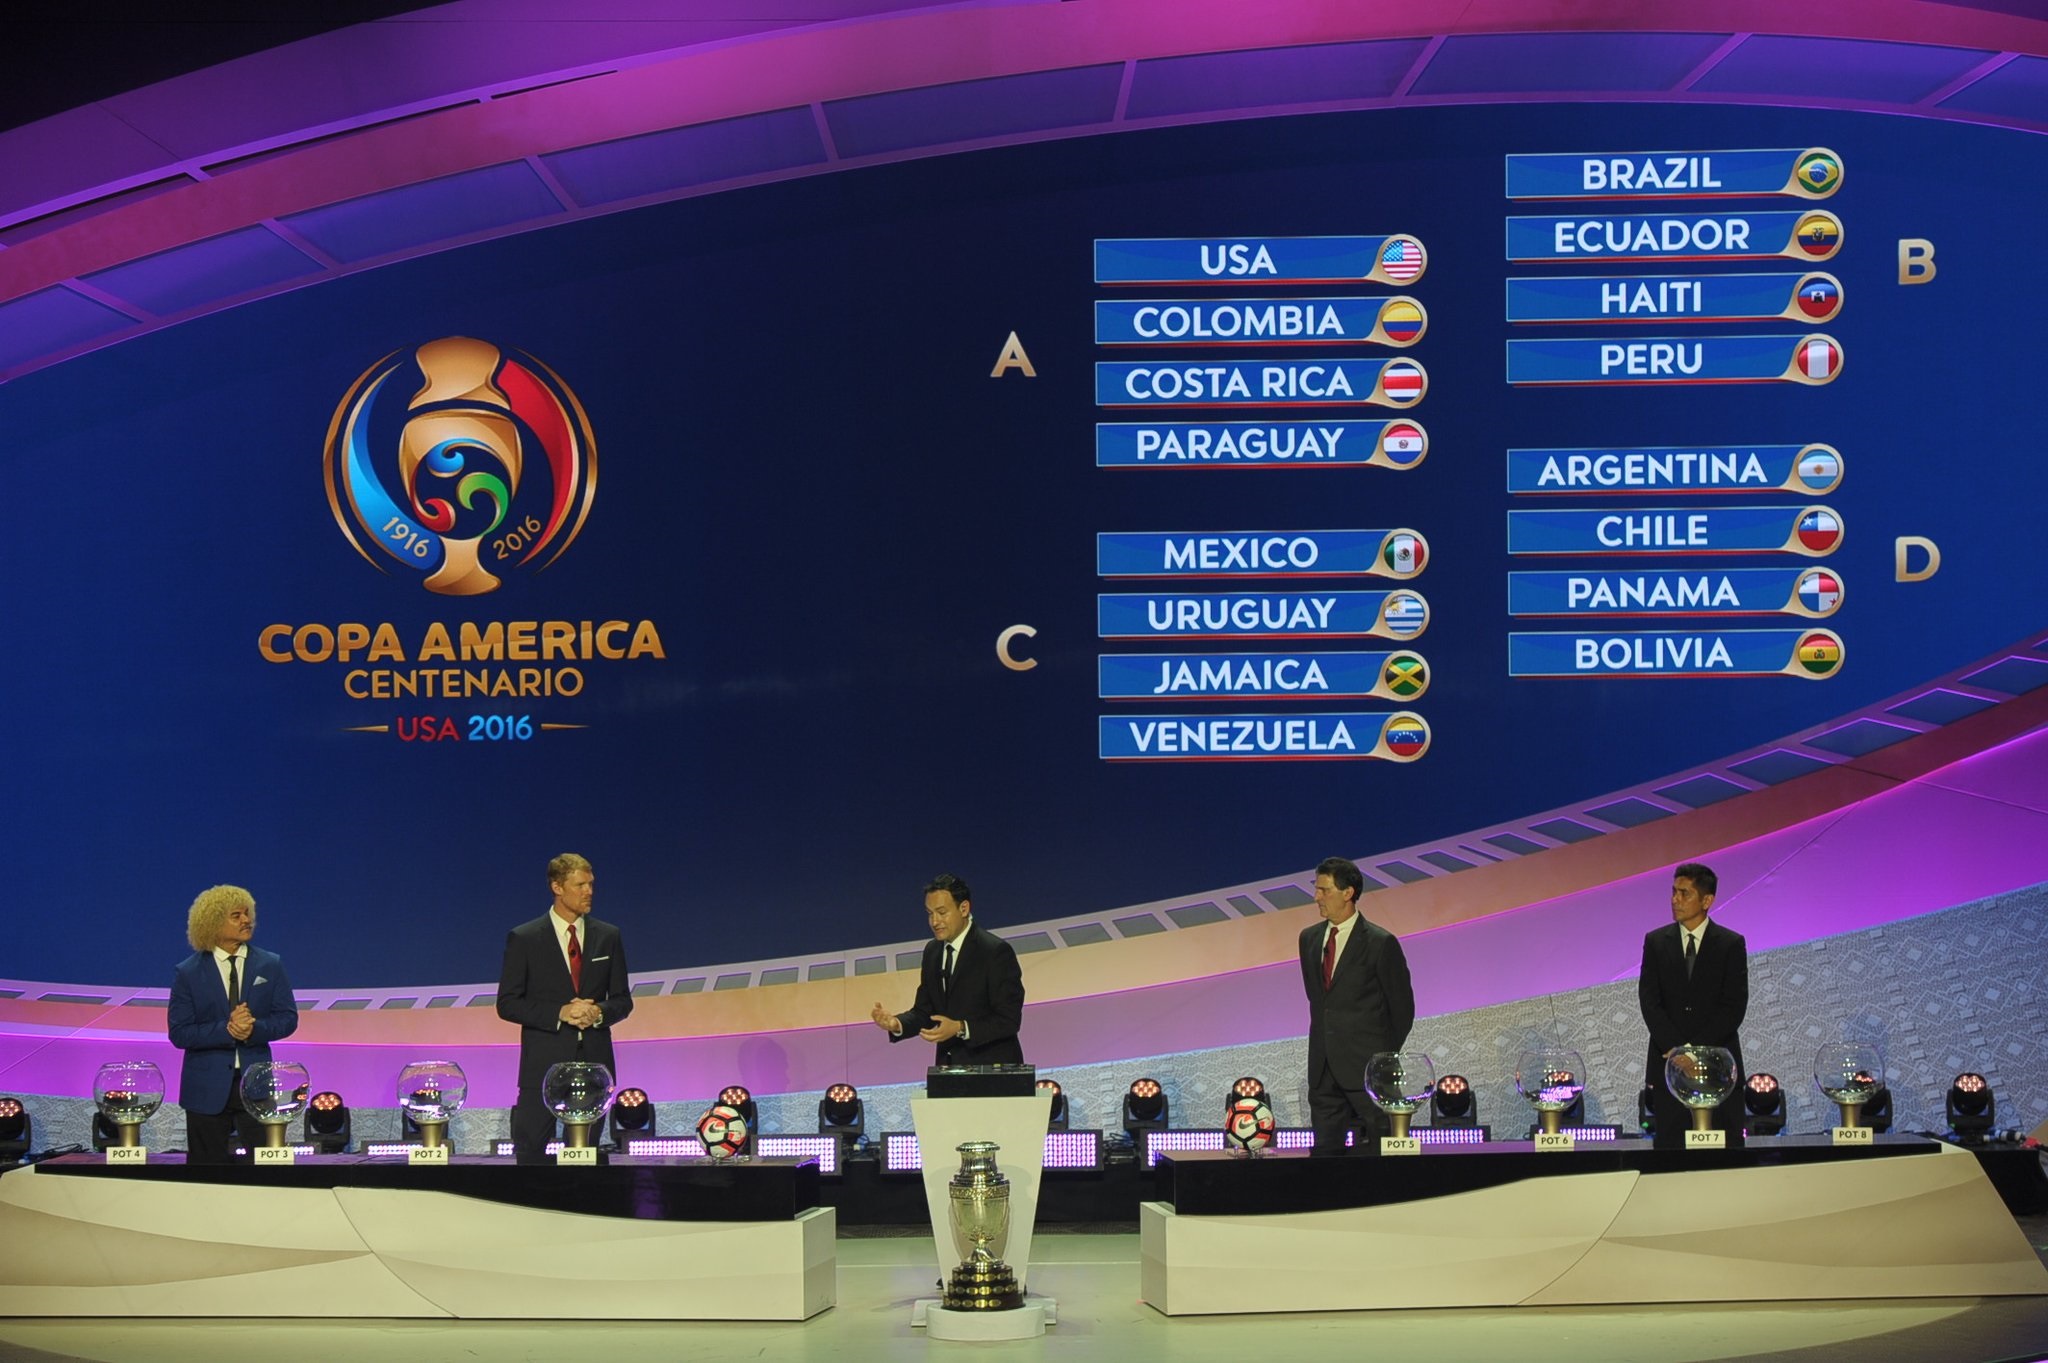 Brasil, Equador, Haiti e Peru formam o Grupo B (Foto: Reprodução / Twitter)